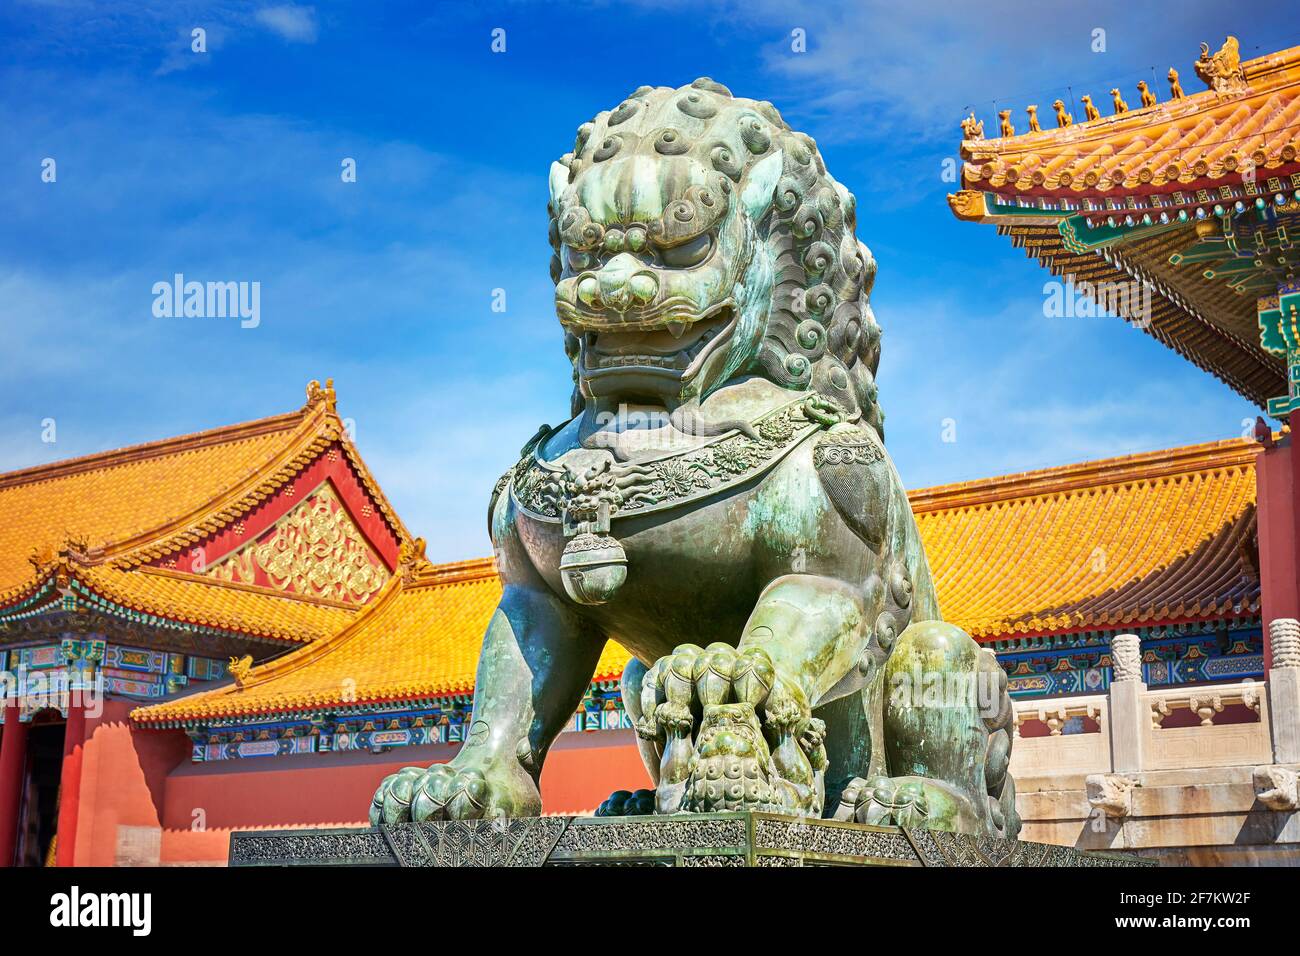 León de Bronce del tutor, la Ciudad Prohibida, Beijing, China Foto de stock